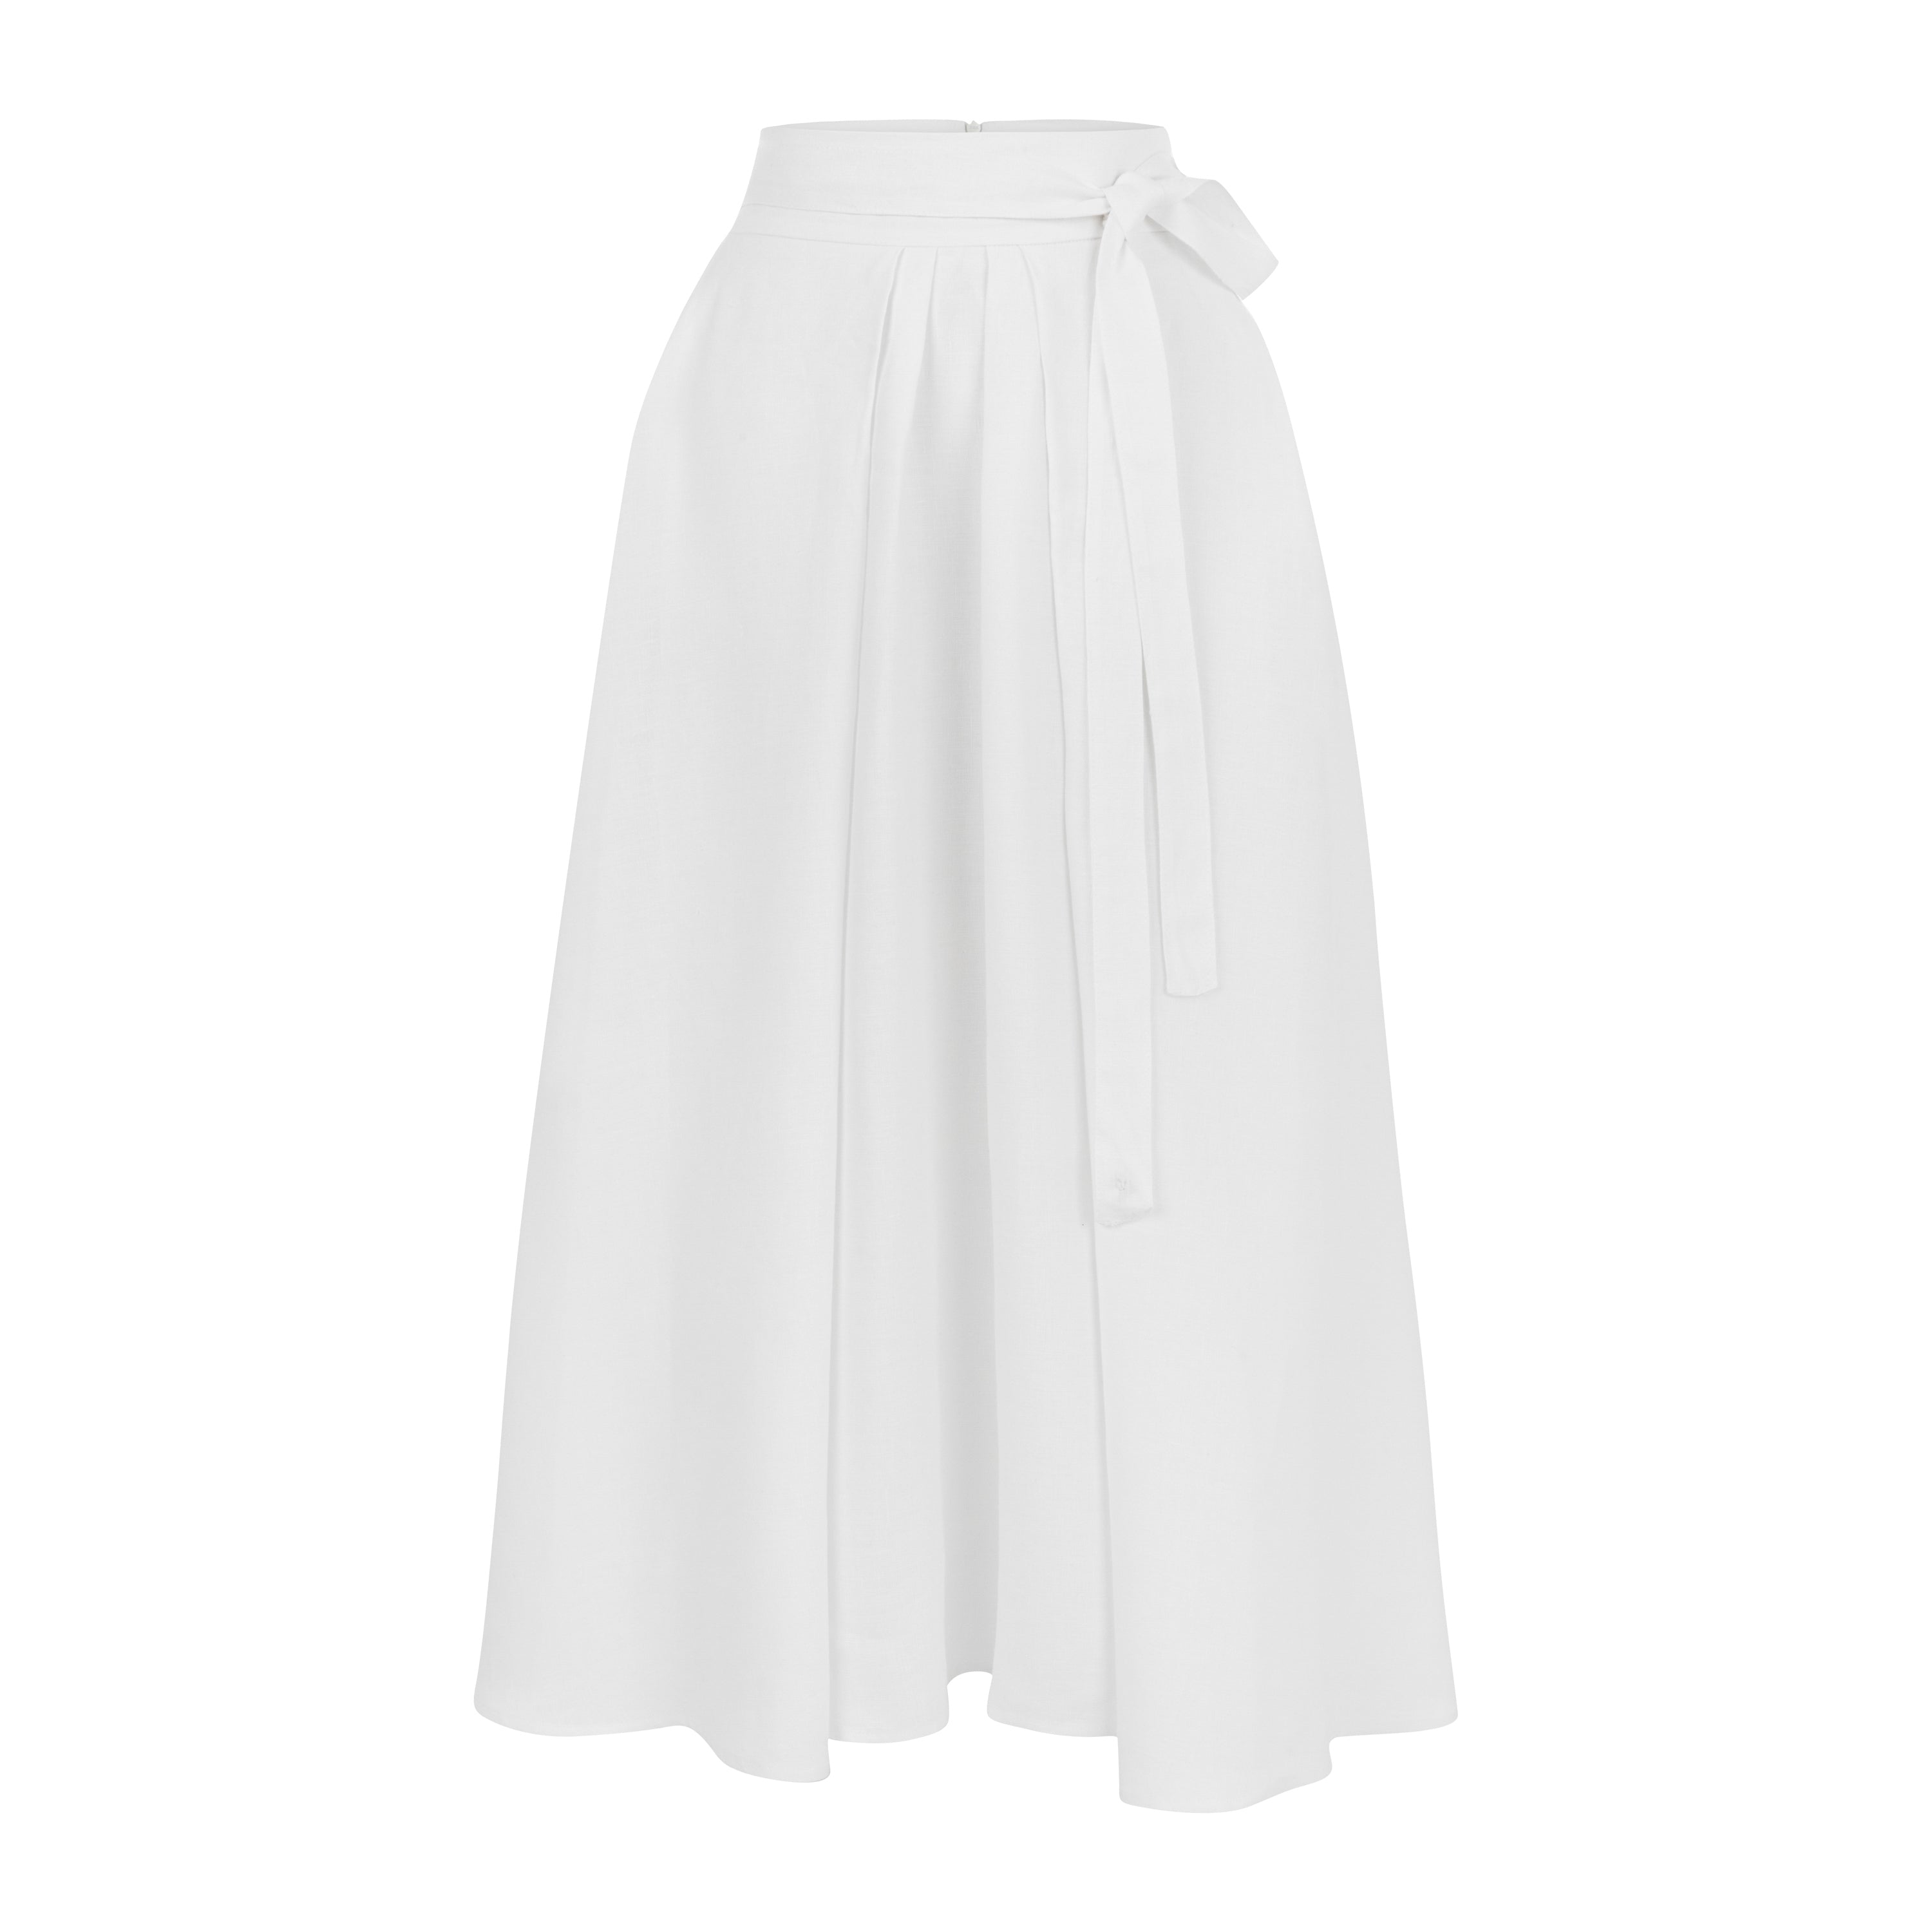 Grand Gesture Linen Skirt